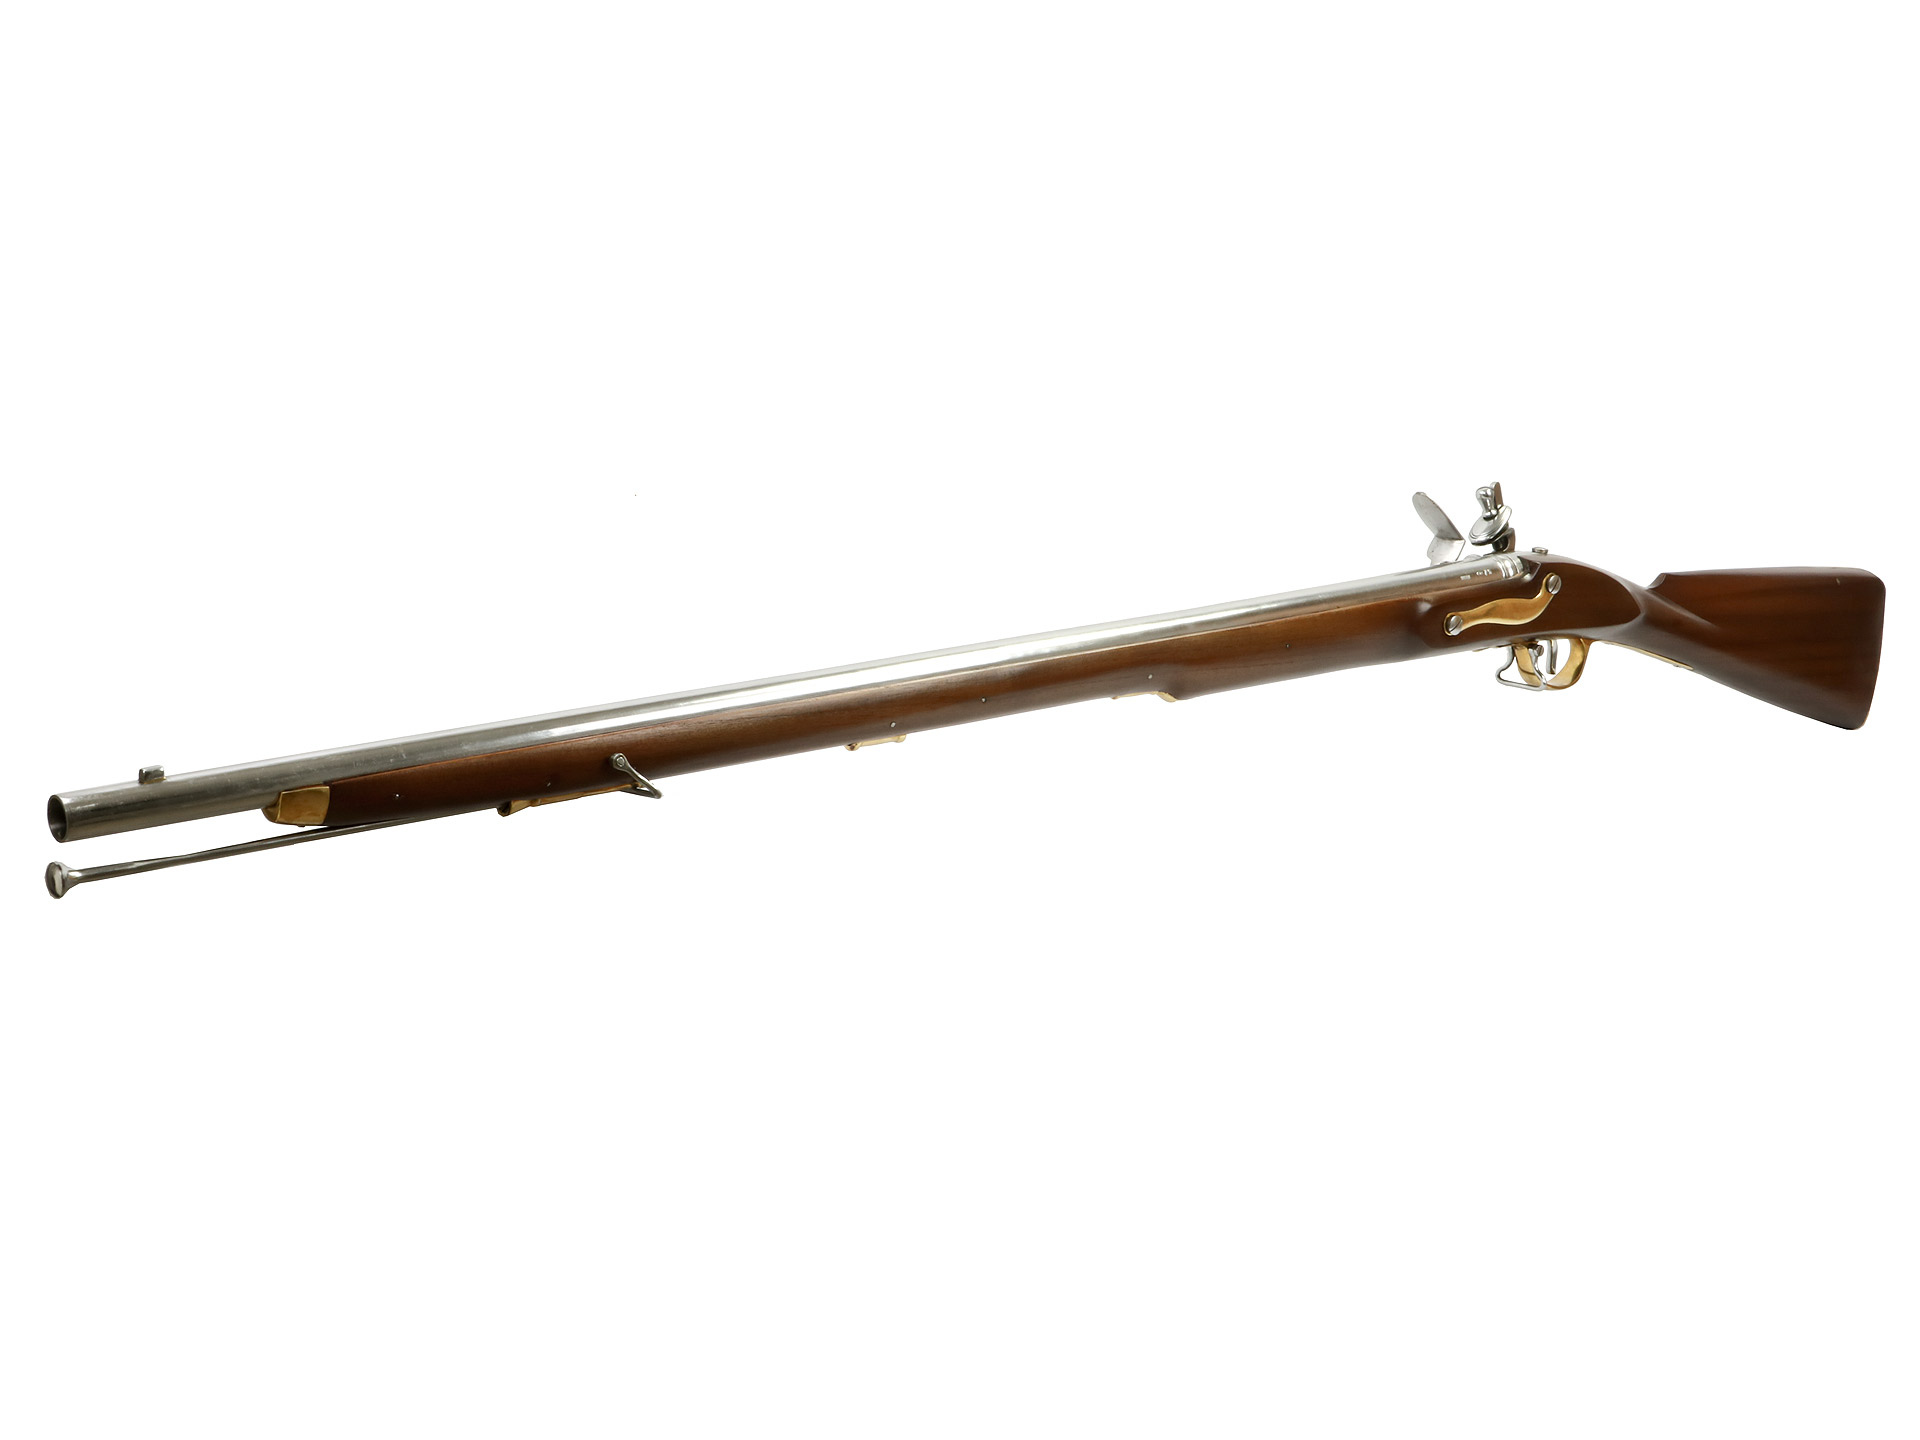 Vorderlader Steinschlossgewehr Brown Bess 3rd Model India Pattern Musket Kaliber .75 bzw. 19 mm (P18)